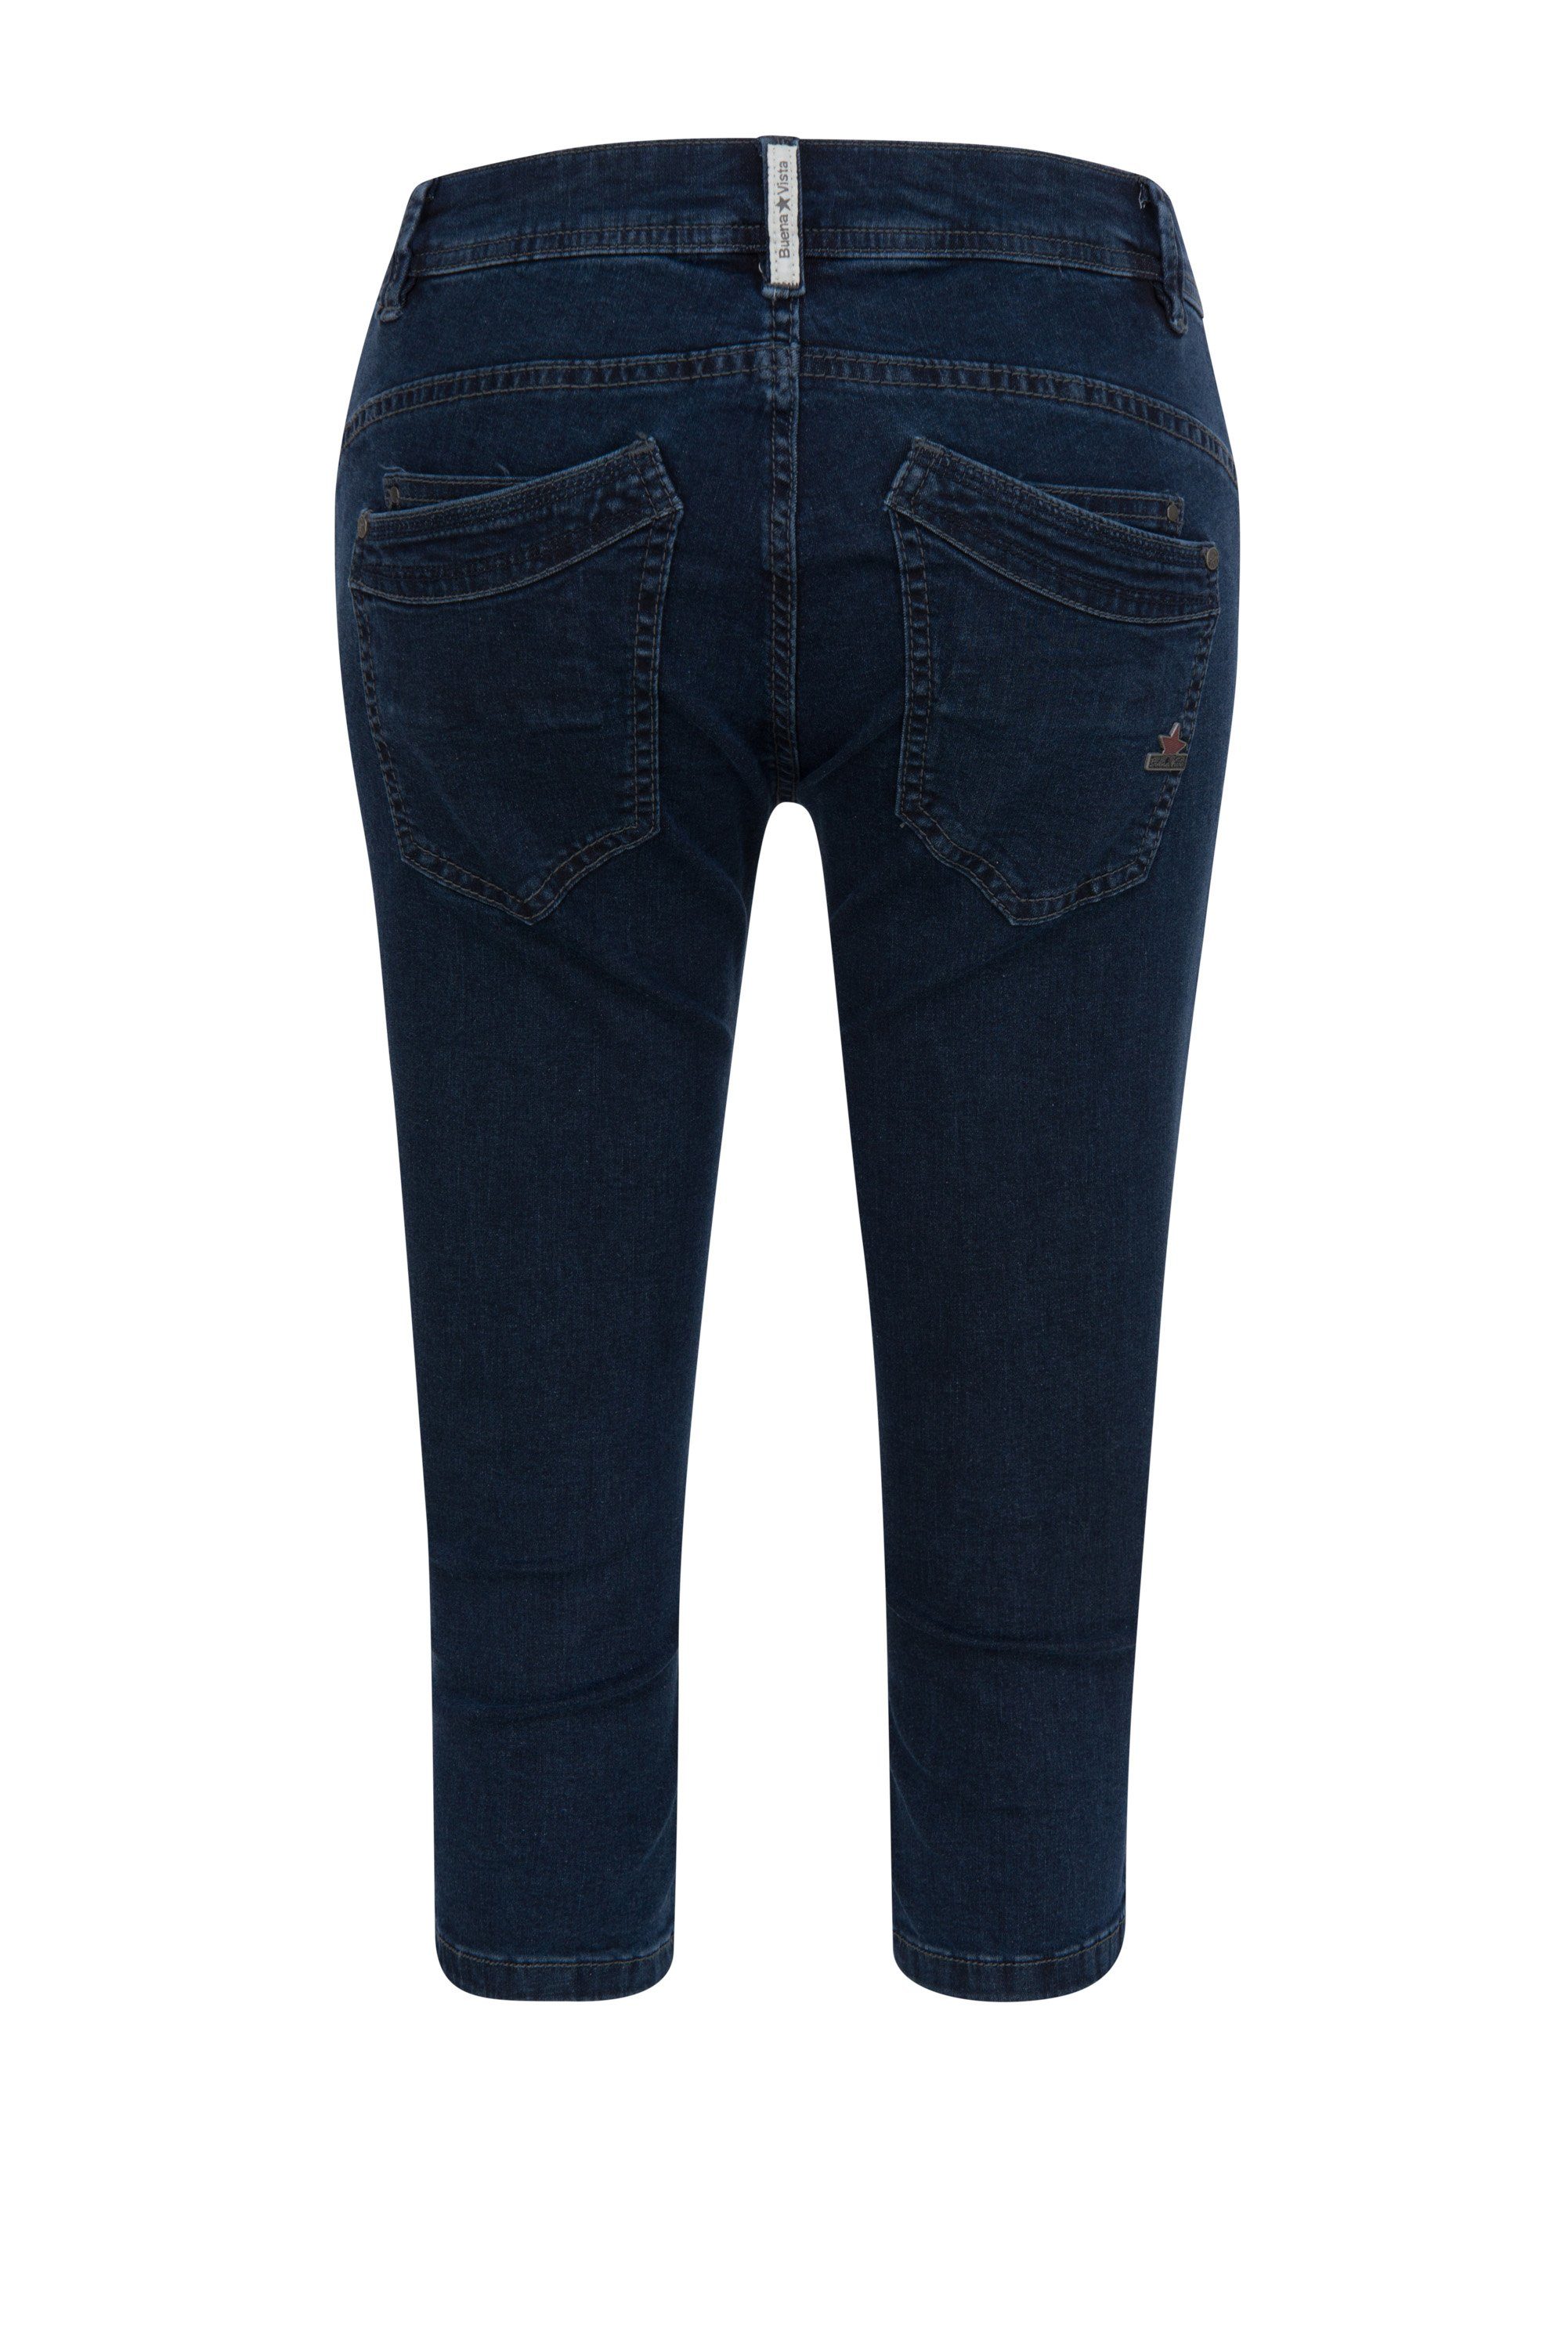 Damen Jeans Buena Vista Stretch-Jeans BUENA VISTA MALIBU CAPRI raw blue 2104 J5232 212.1